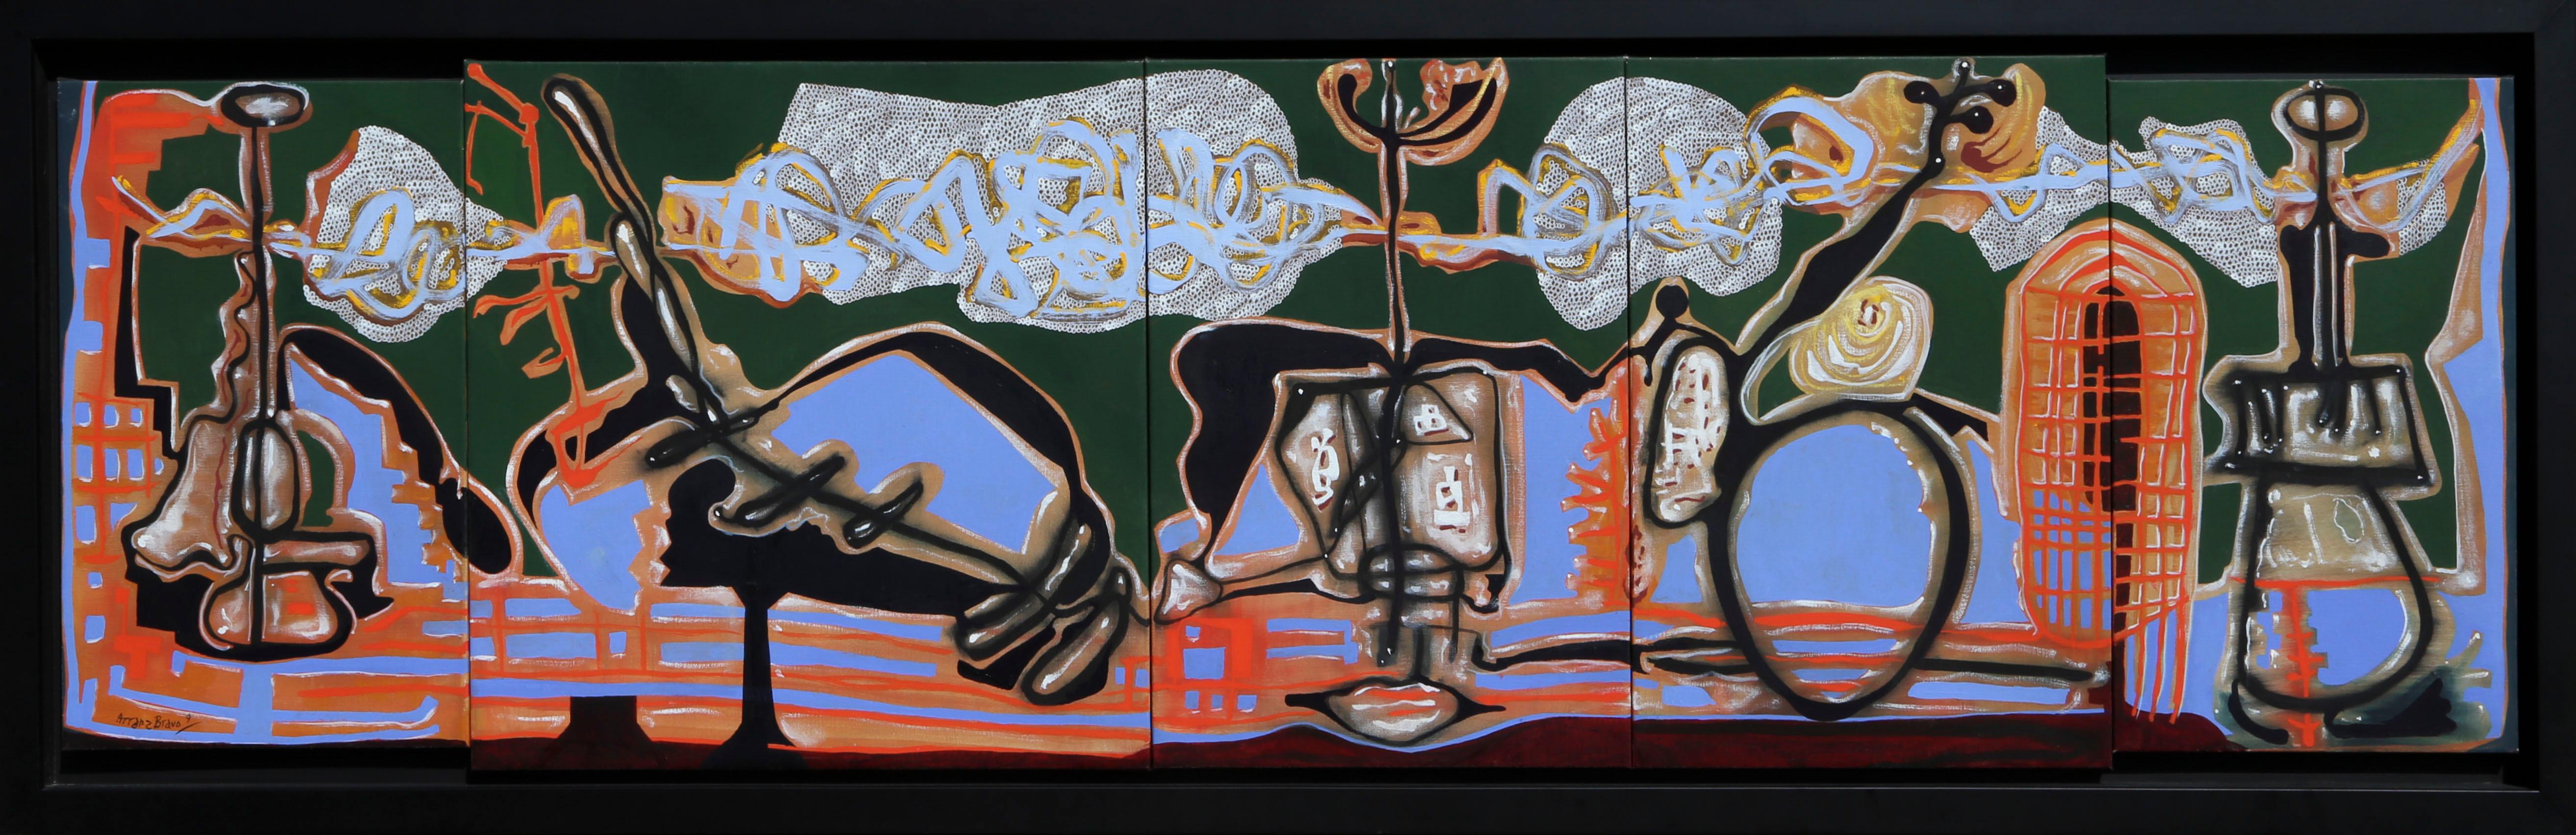 Le peintre catalan Eduardo Arranz-Bravo est un artiste qui suscite une abstraction révolutionnaire sur la scène artistique contemporaine. S'inspirant des travaux surréalistes de grands noms comme Joan Miro, son style est ludique, évocateur et